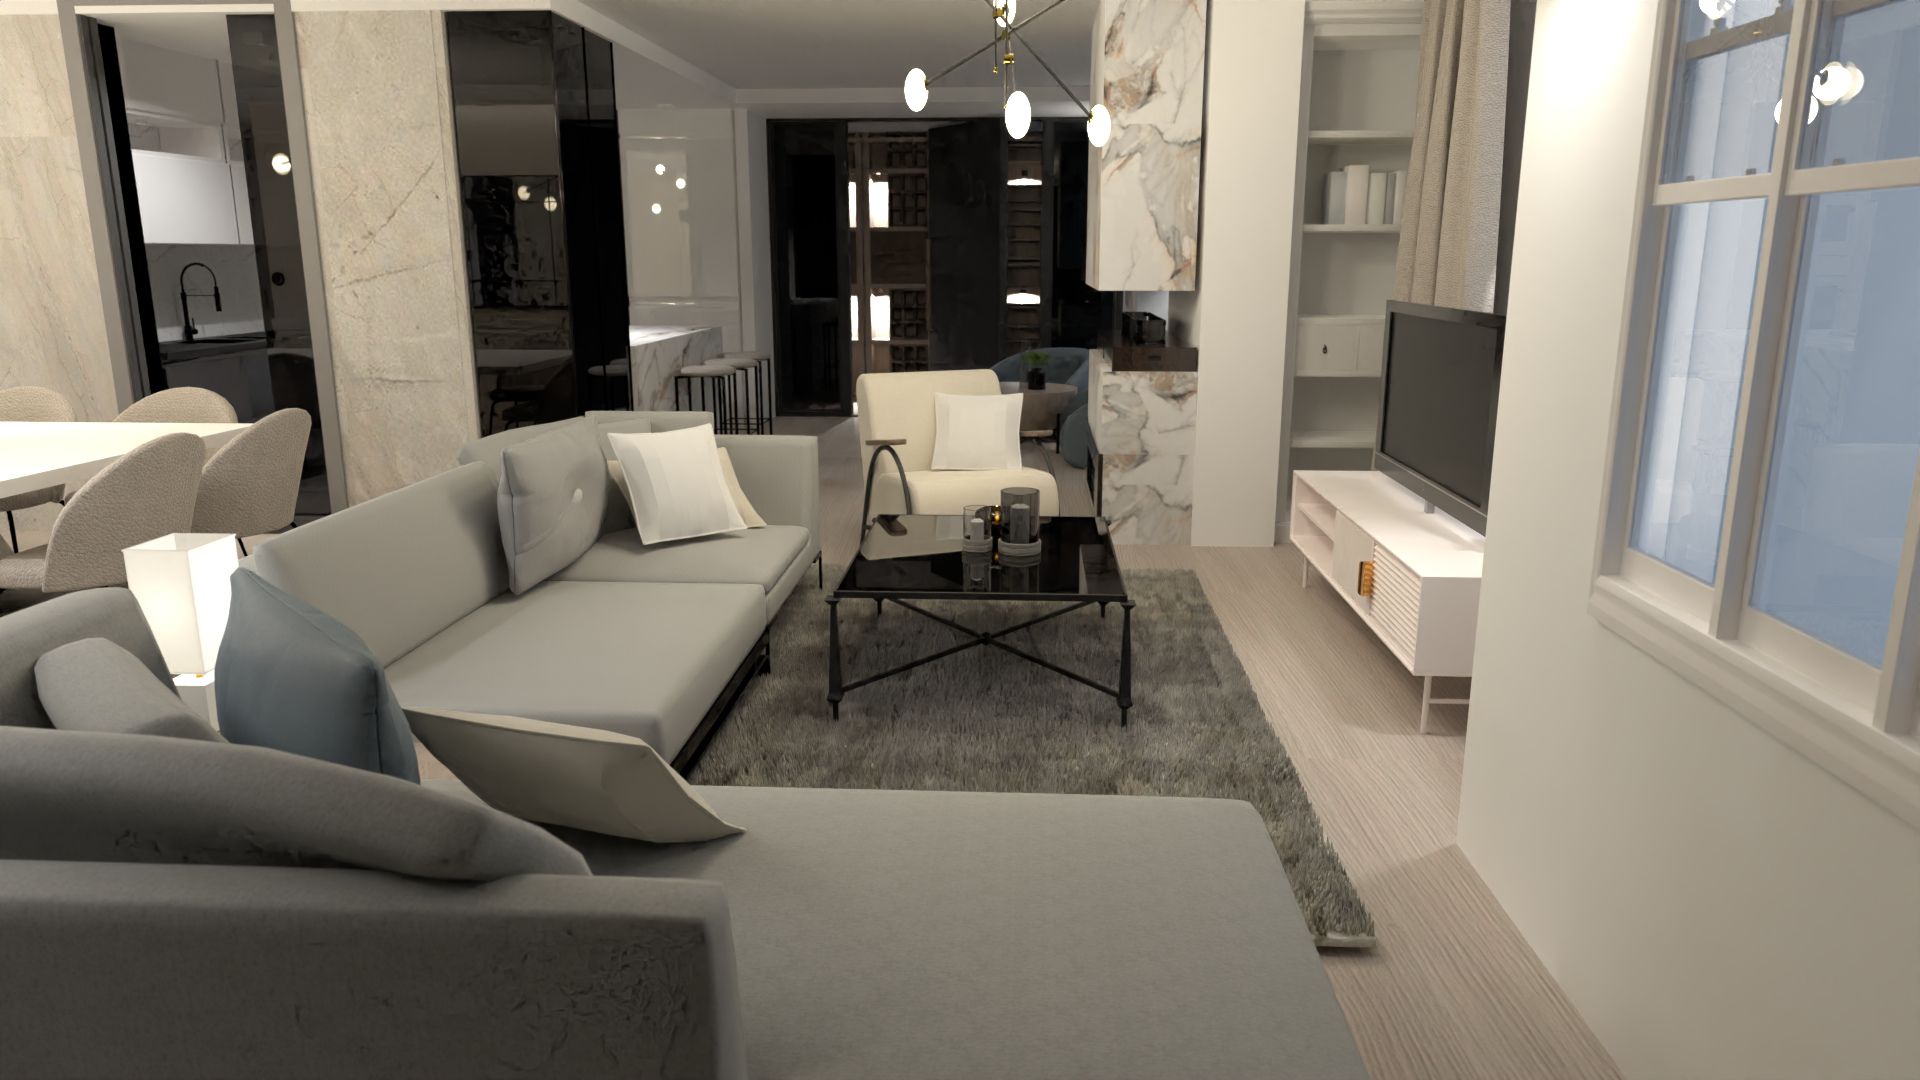 sala de estar de estilo moderno blanco y negro, render 3d planner 5d